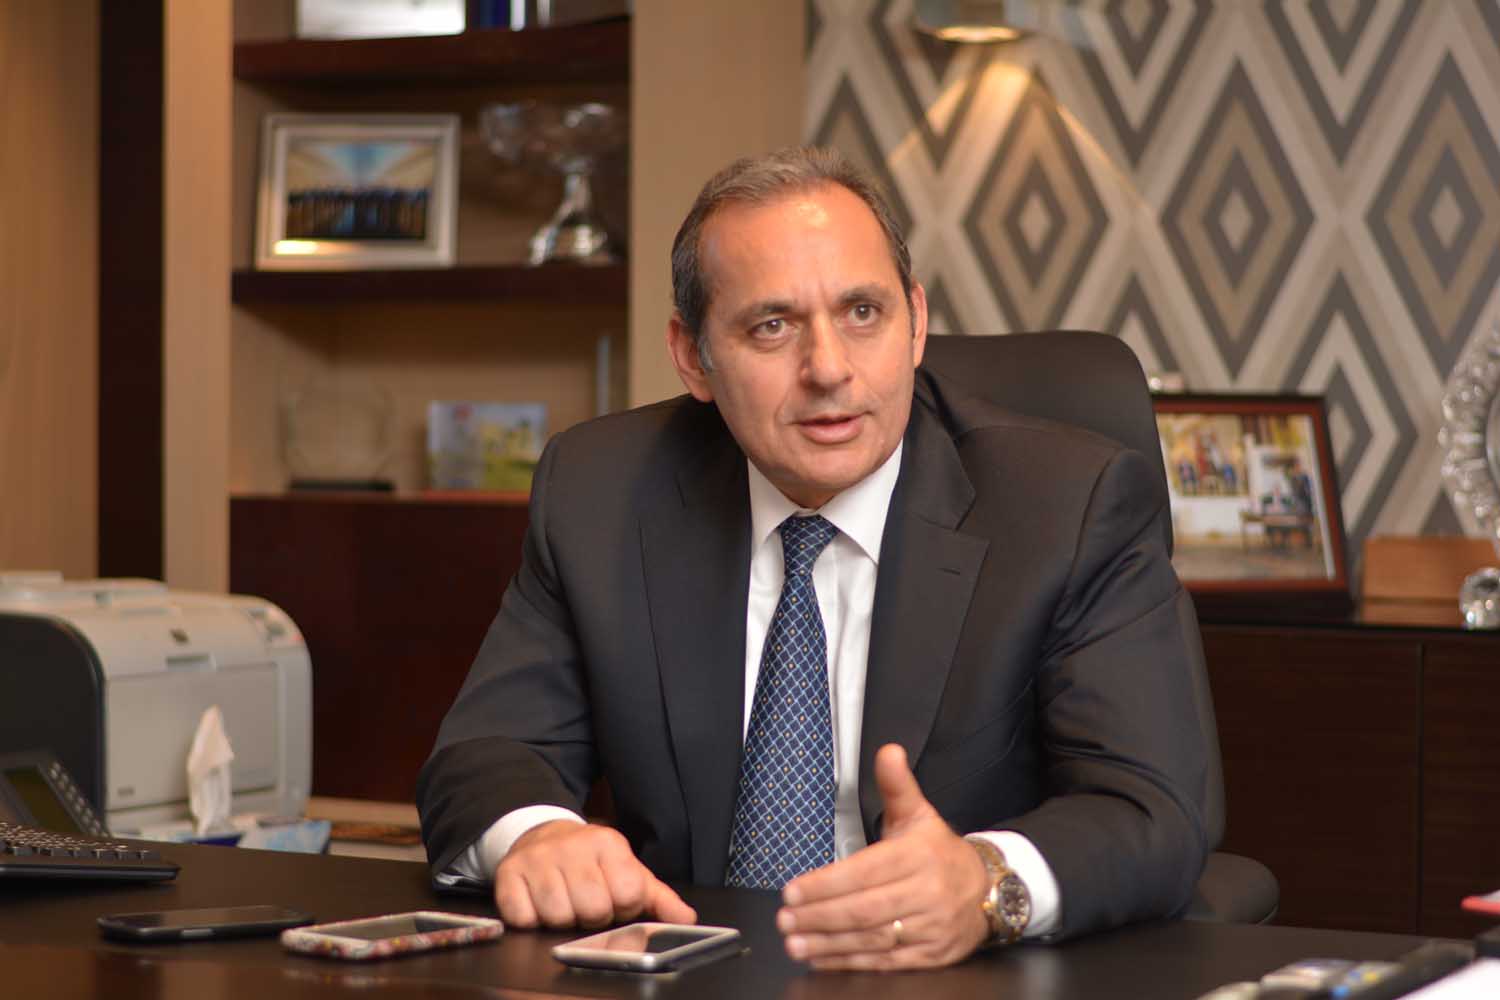  هشام عكاشة، رئيس مجلس إدارة البنك الأهلى